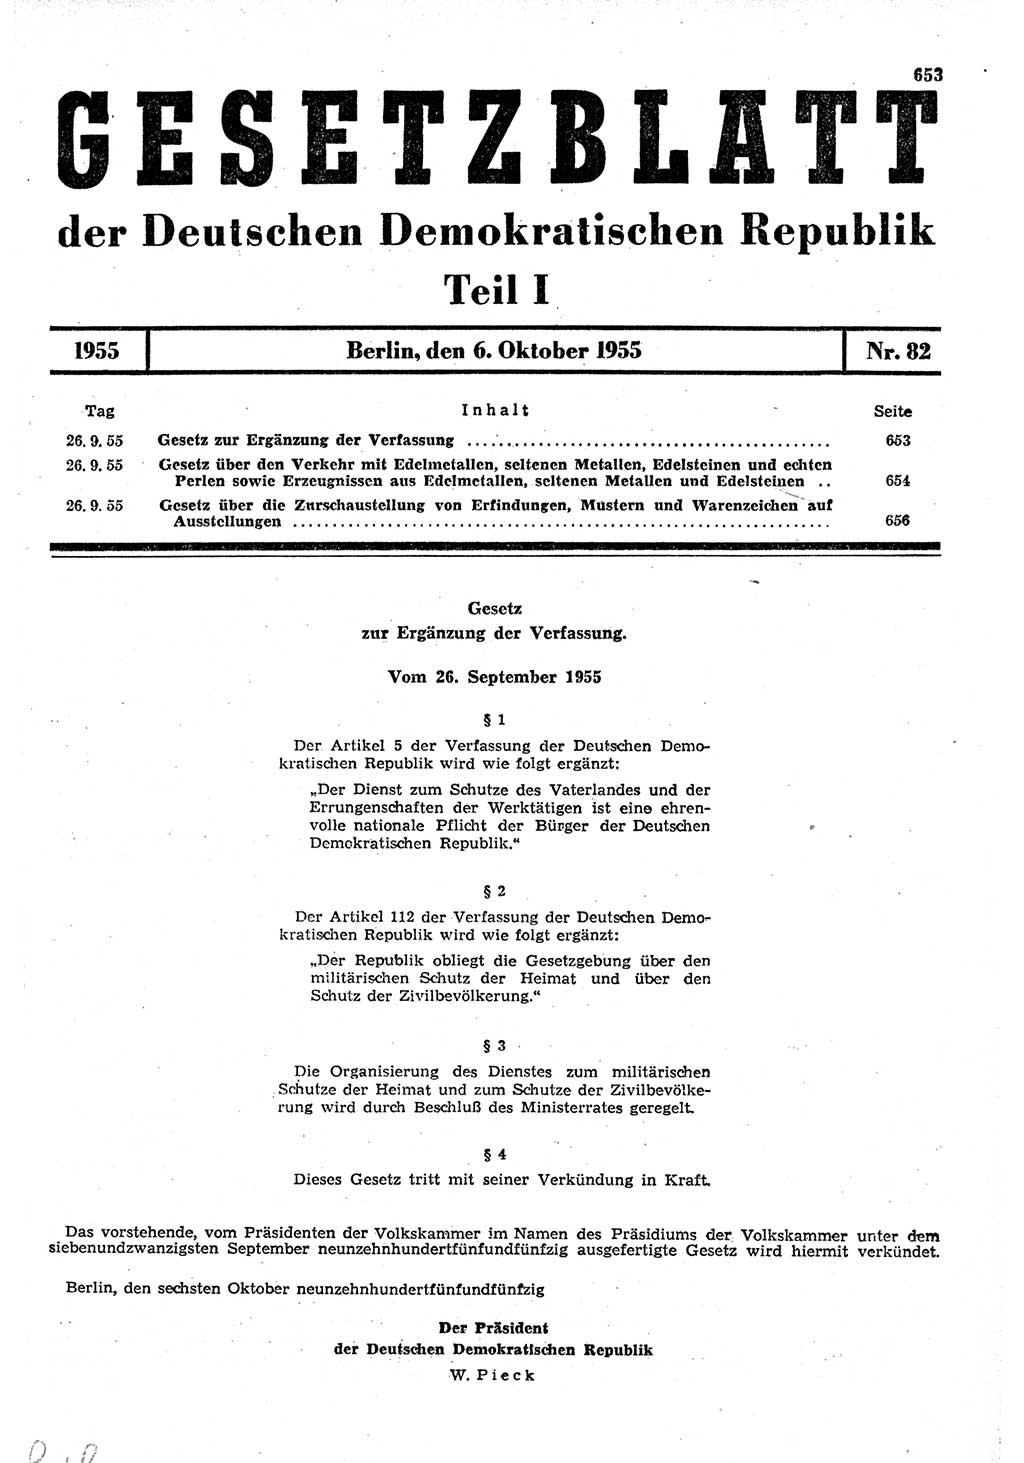 Gesetzblatt (GBl.) der Deutschen Demokratischen Republik (DDR) Teil Ⅰ 1955, Seite 653 (GBl. DDR Ⅰ 1955, S. 653)